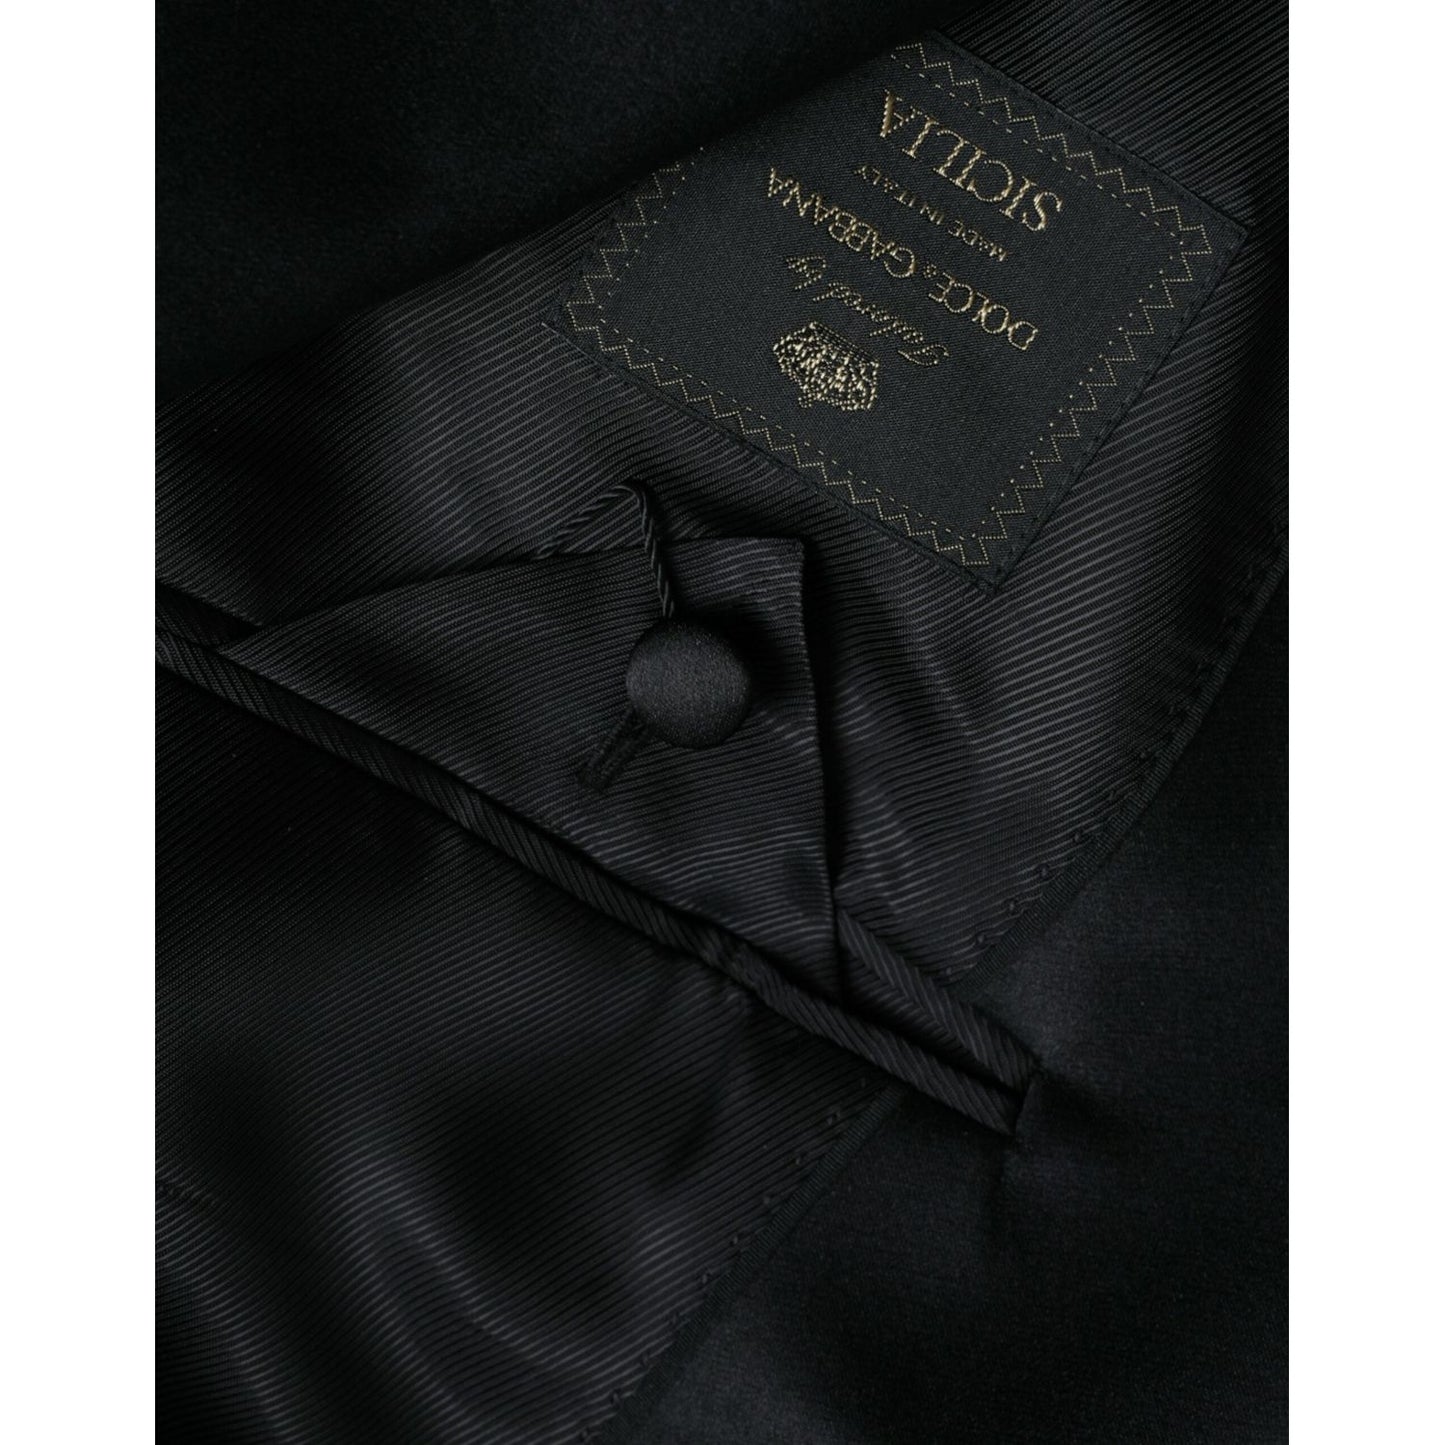 Dolce & Gabbana Black SICILIA Single Breasted Coat Blazer black-sicilia-single-breasted-coat-blazer